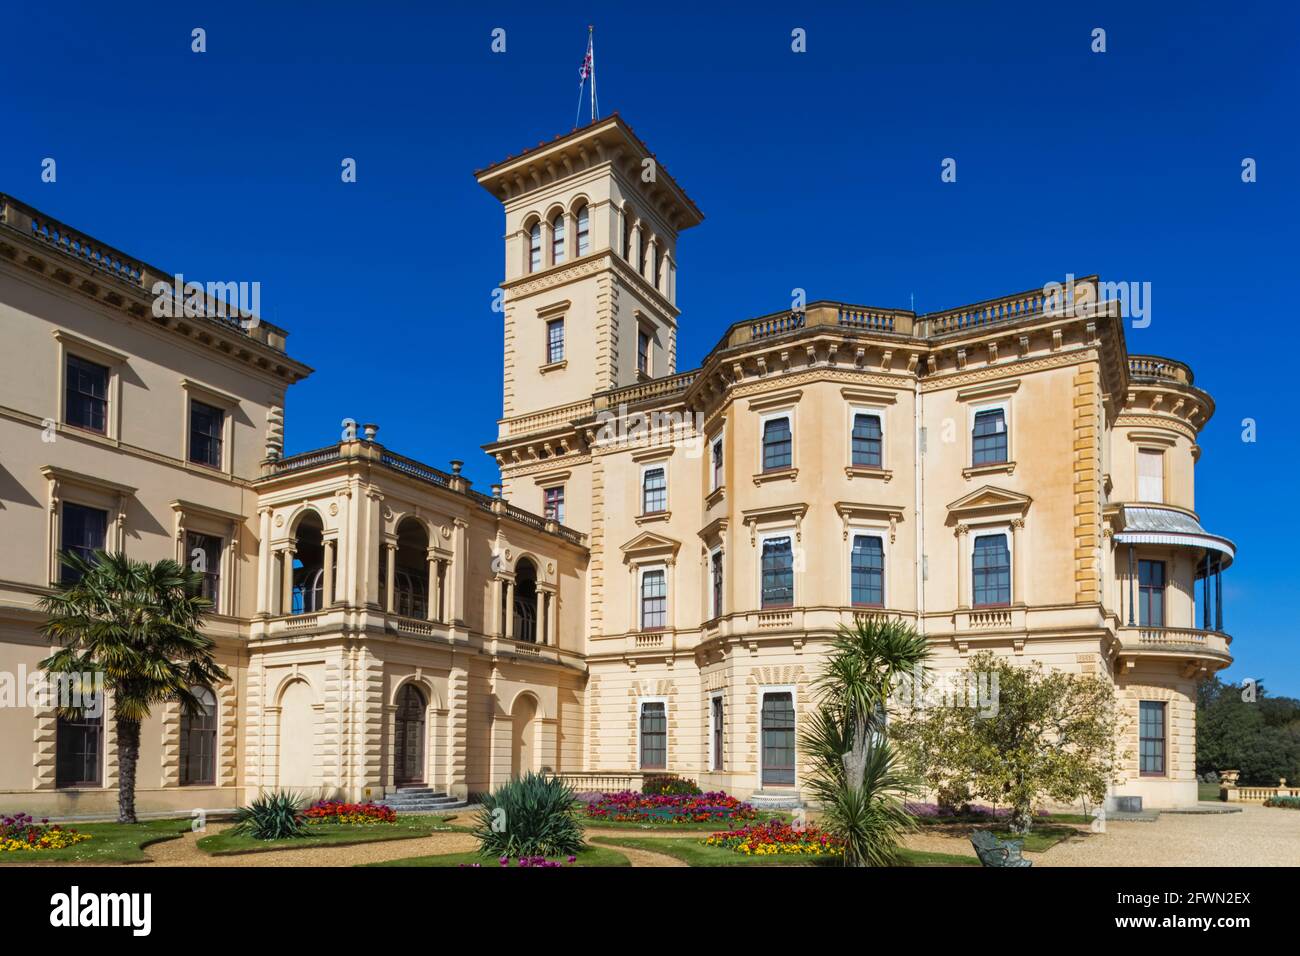 Angleterre, Île de Wight, East Cowes, Osborne House, ancien palais de la reine Victoria et du prince Albert Banque D'Images